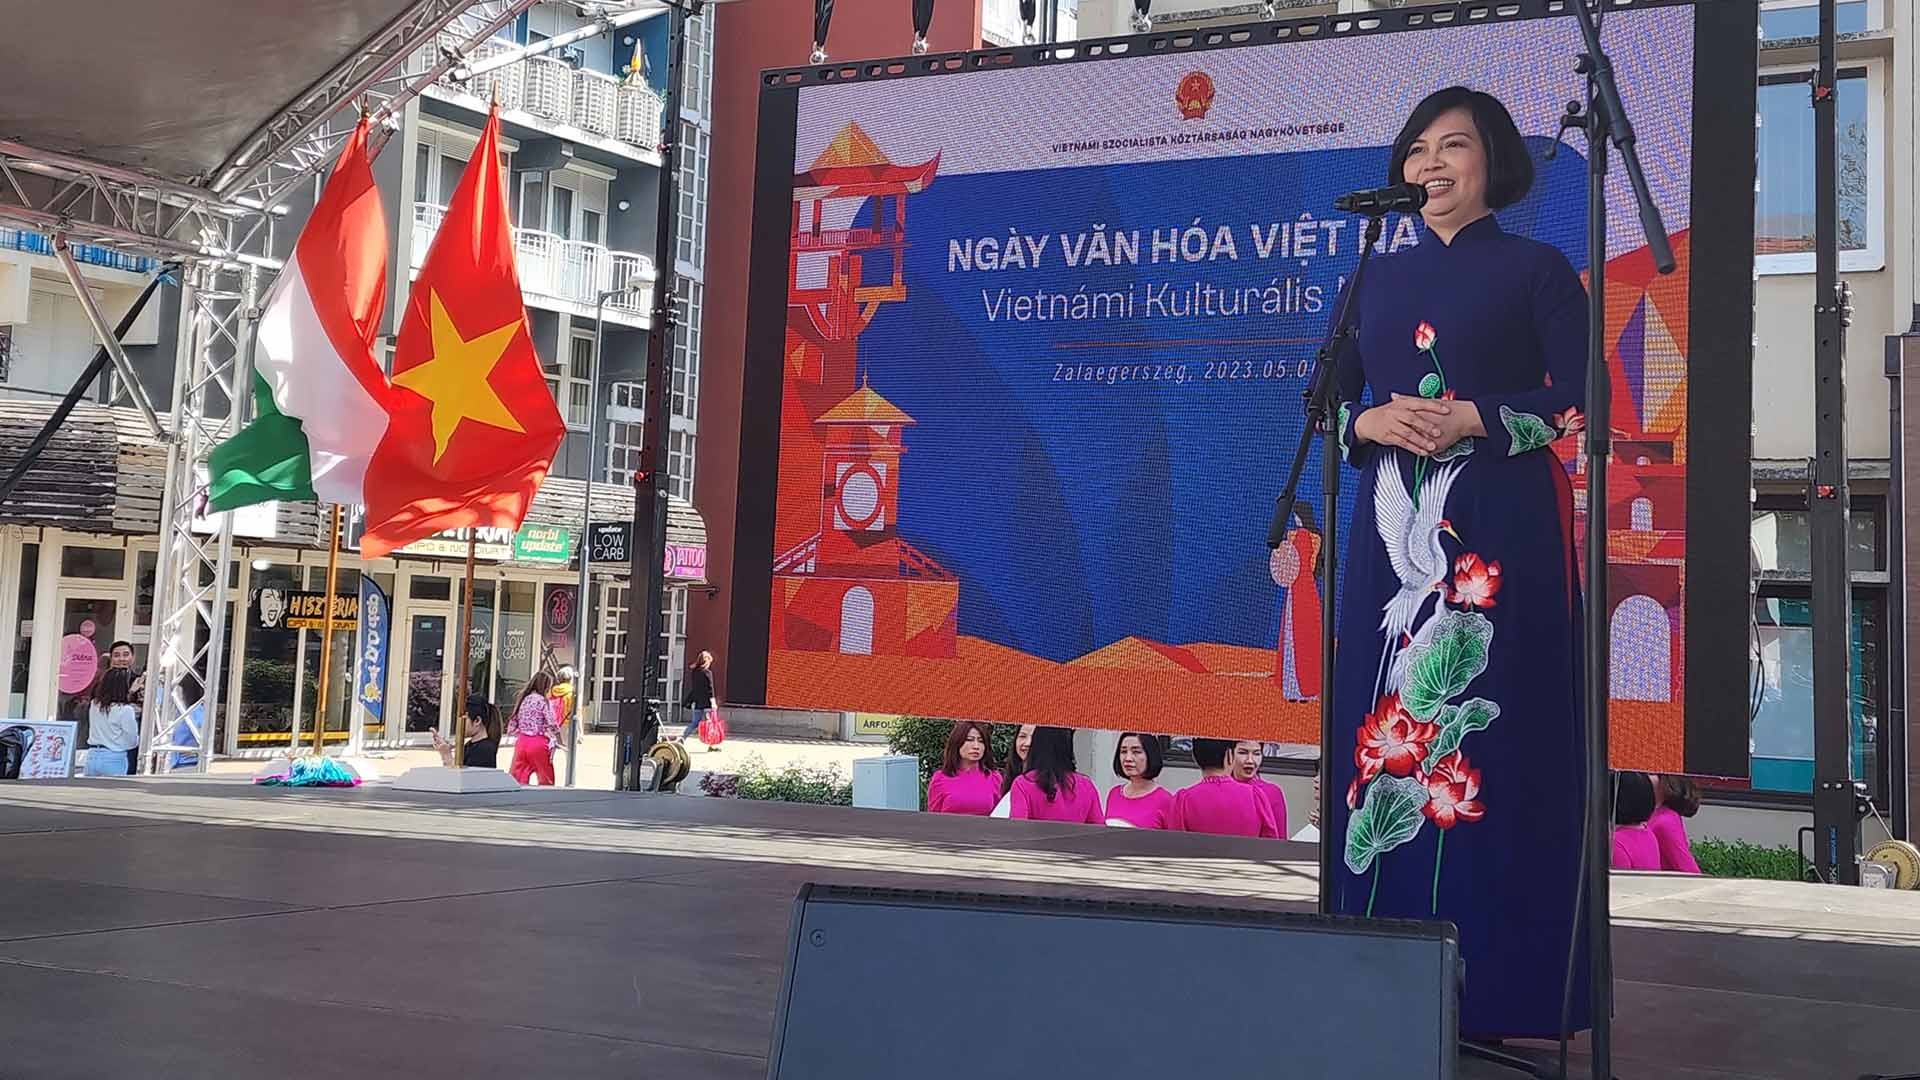 Đại sứ Nguyễn Thị Bích Thảo phát biểu khai mạc sự kiện